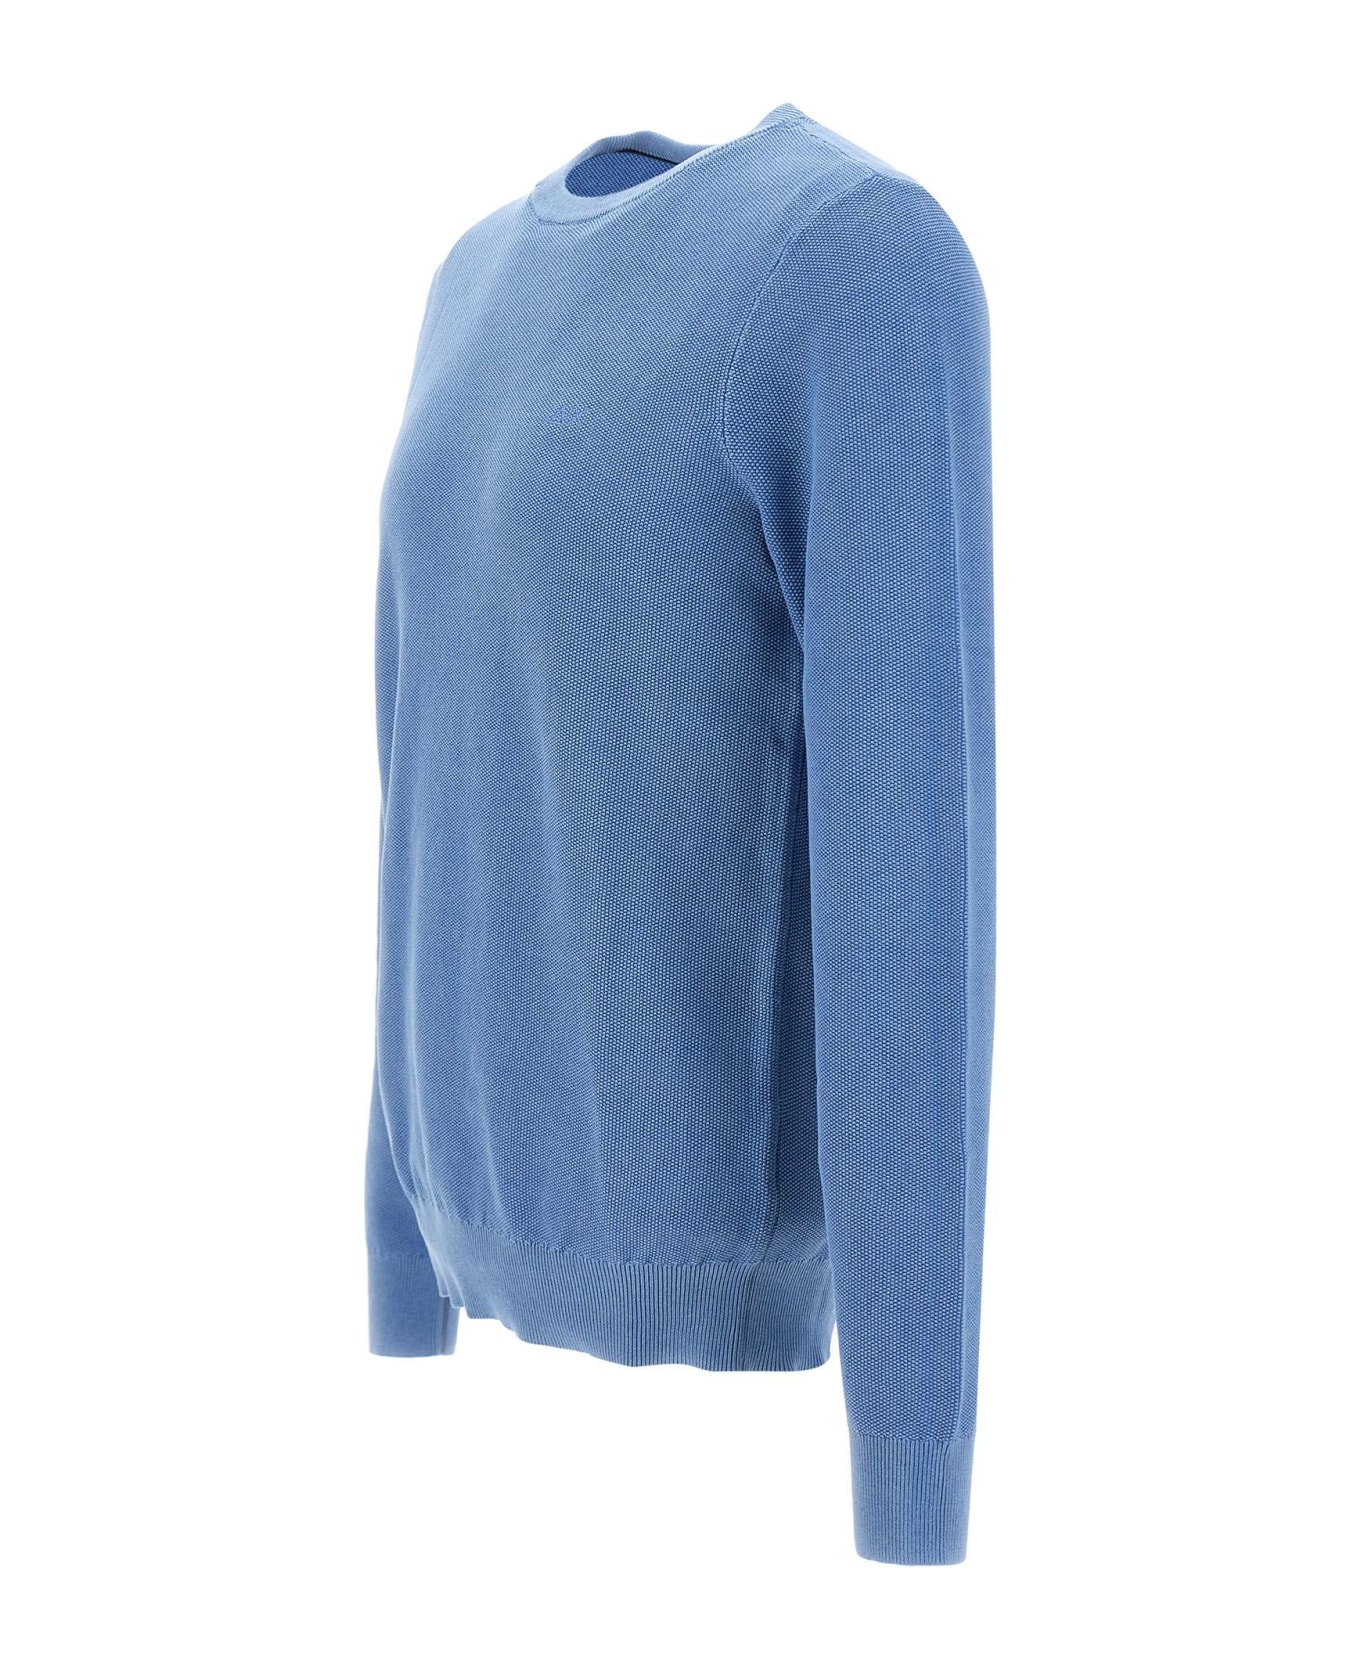 Sun 68 'round Vintage' Sweater Cotton Sweater - AVIO ニットウェア